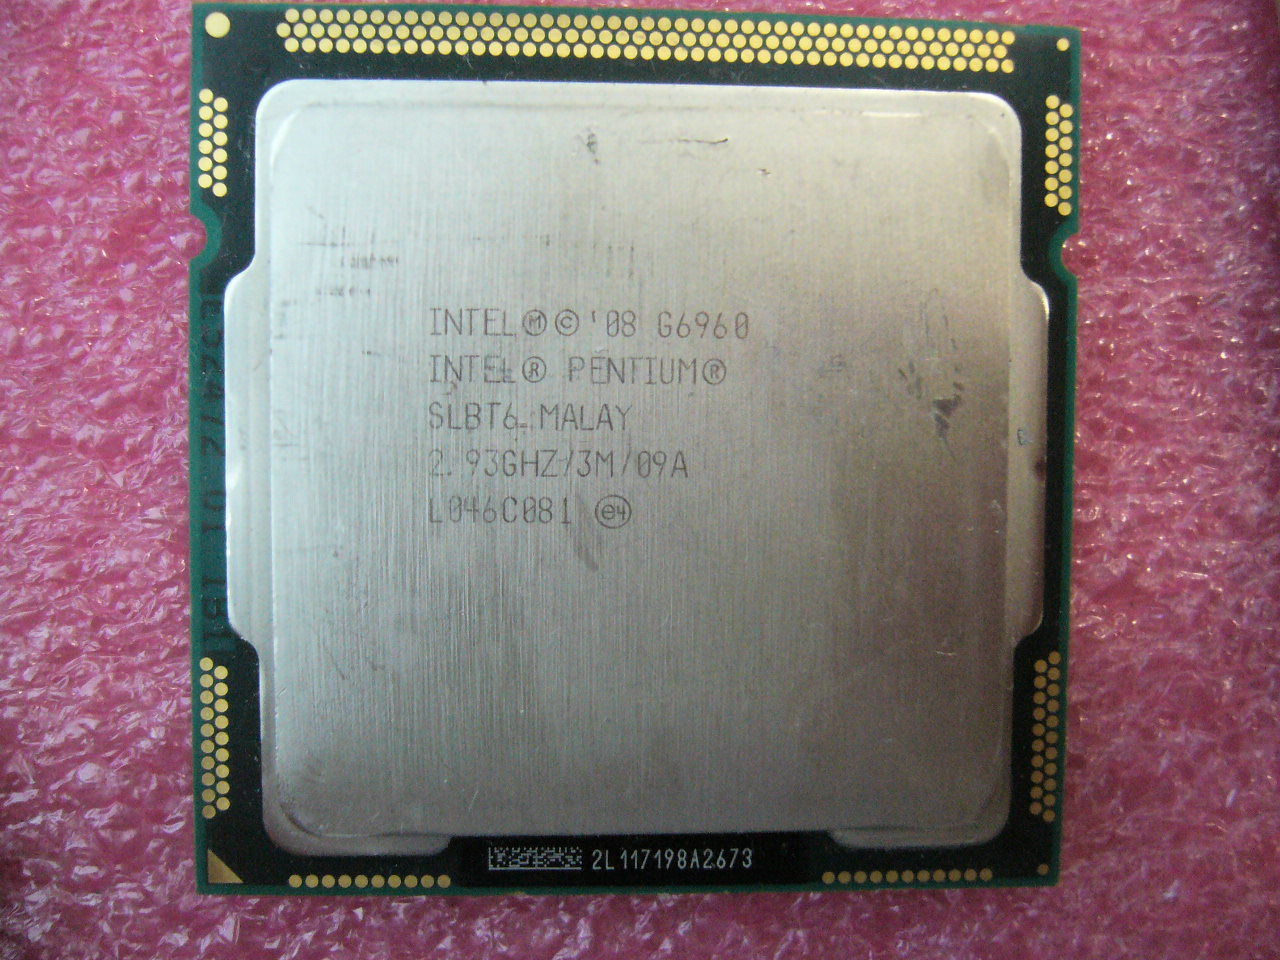 QTY 1x INTEL Pentium CPU G6960 2.93GHZ/3MB LGA1156 SLBT6 - Click Image to Close